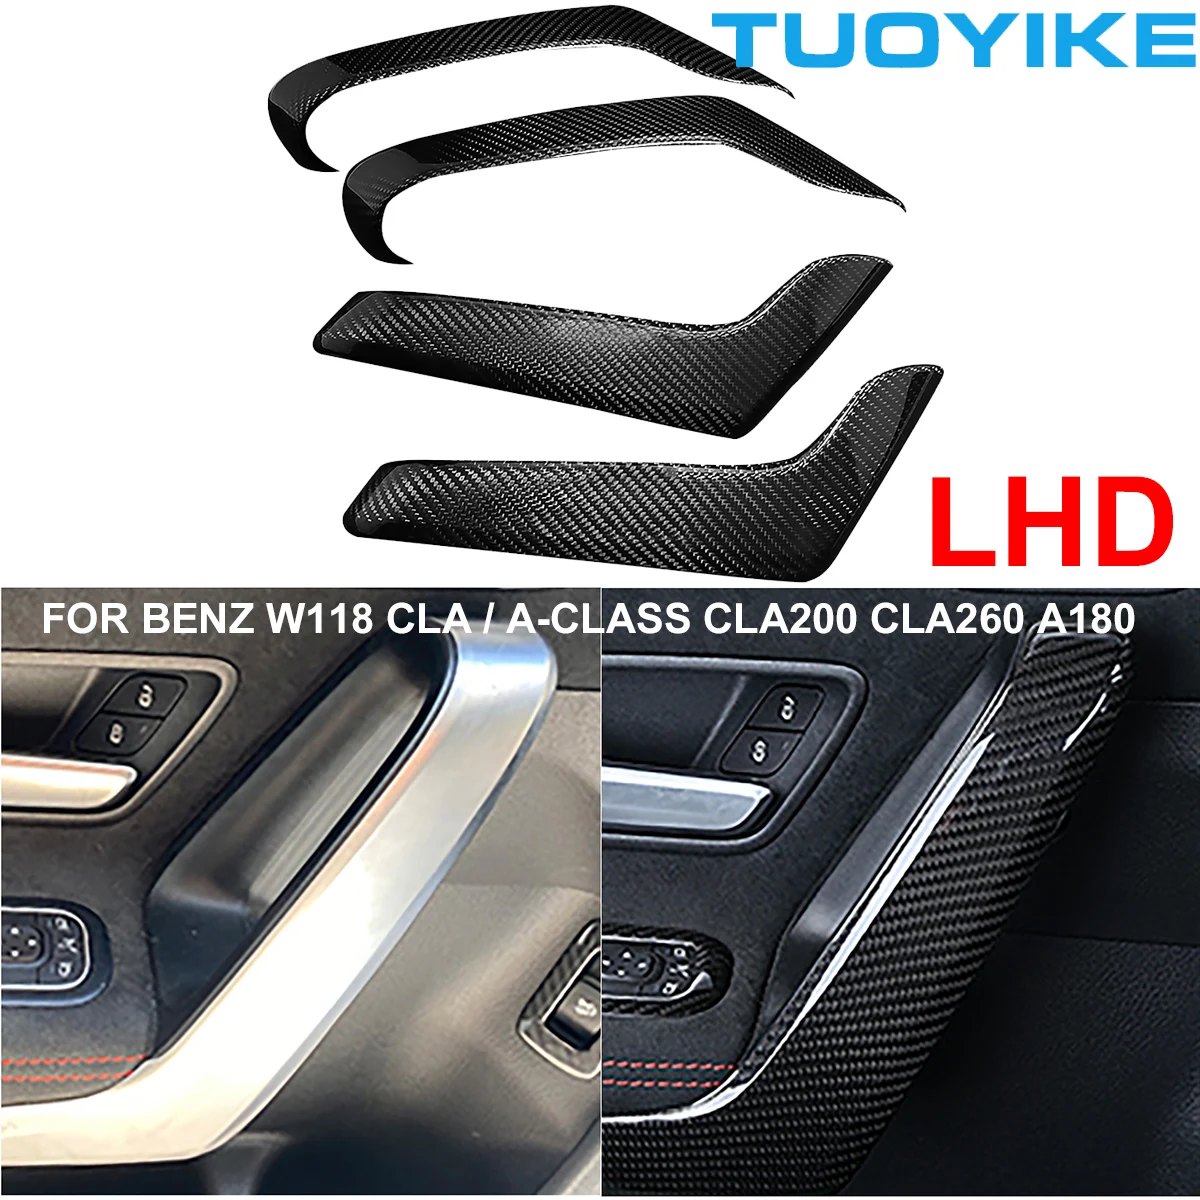 

LHD Carbon Fiber Car Inner Door Handle Armrest Cover Trim Strip Sticker For Mercedes BENZ W118 CLA / A-Class CLA200 CLA260 A180